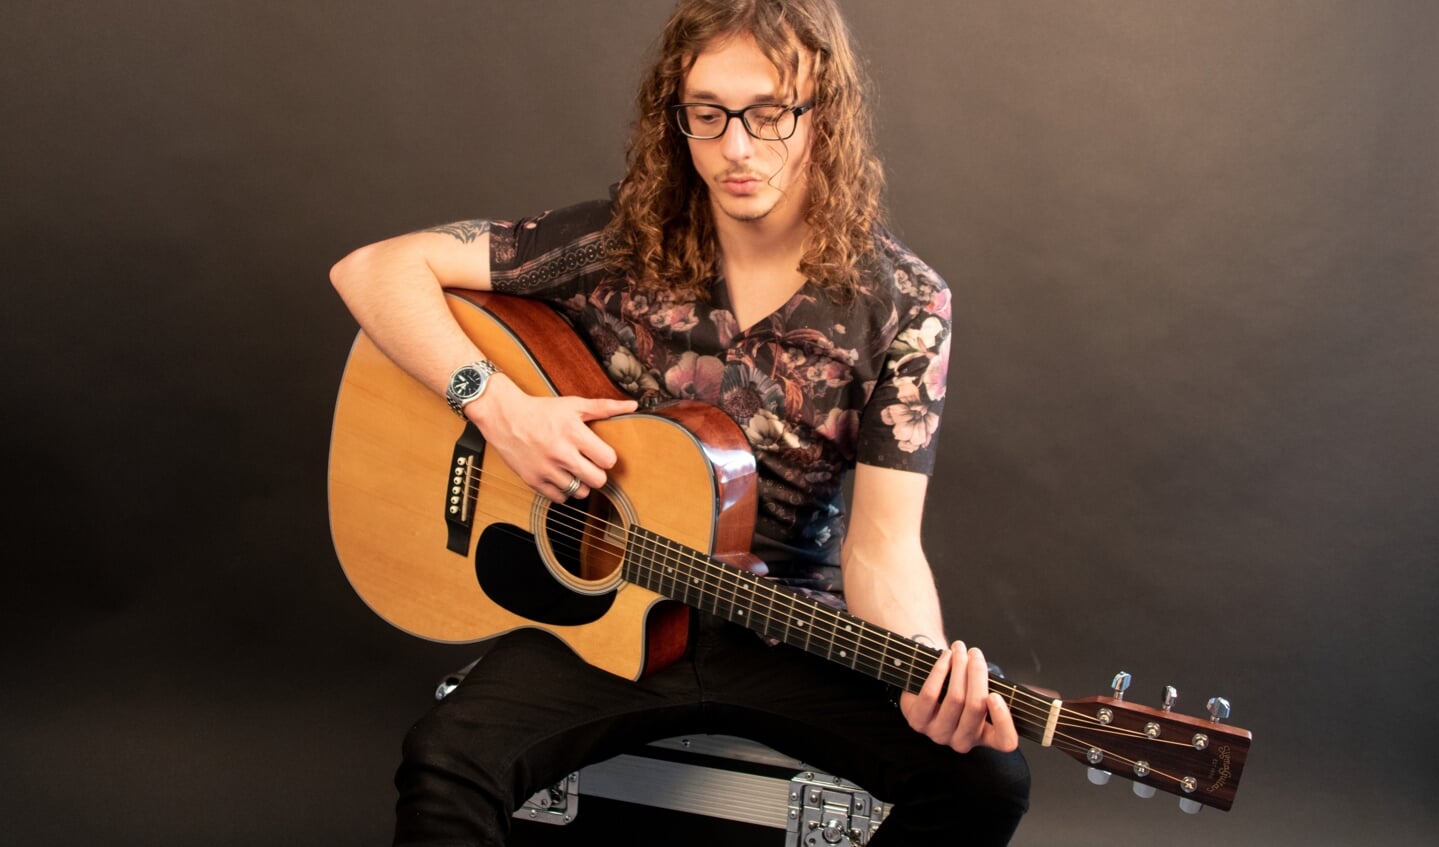 Benjamin de Groot is een 21-jarige singer-songwriter uit Doetinchem. Foto: PR